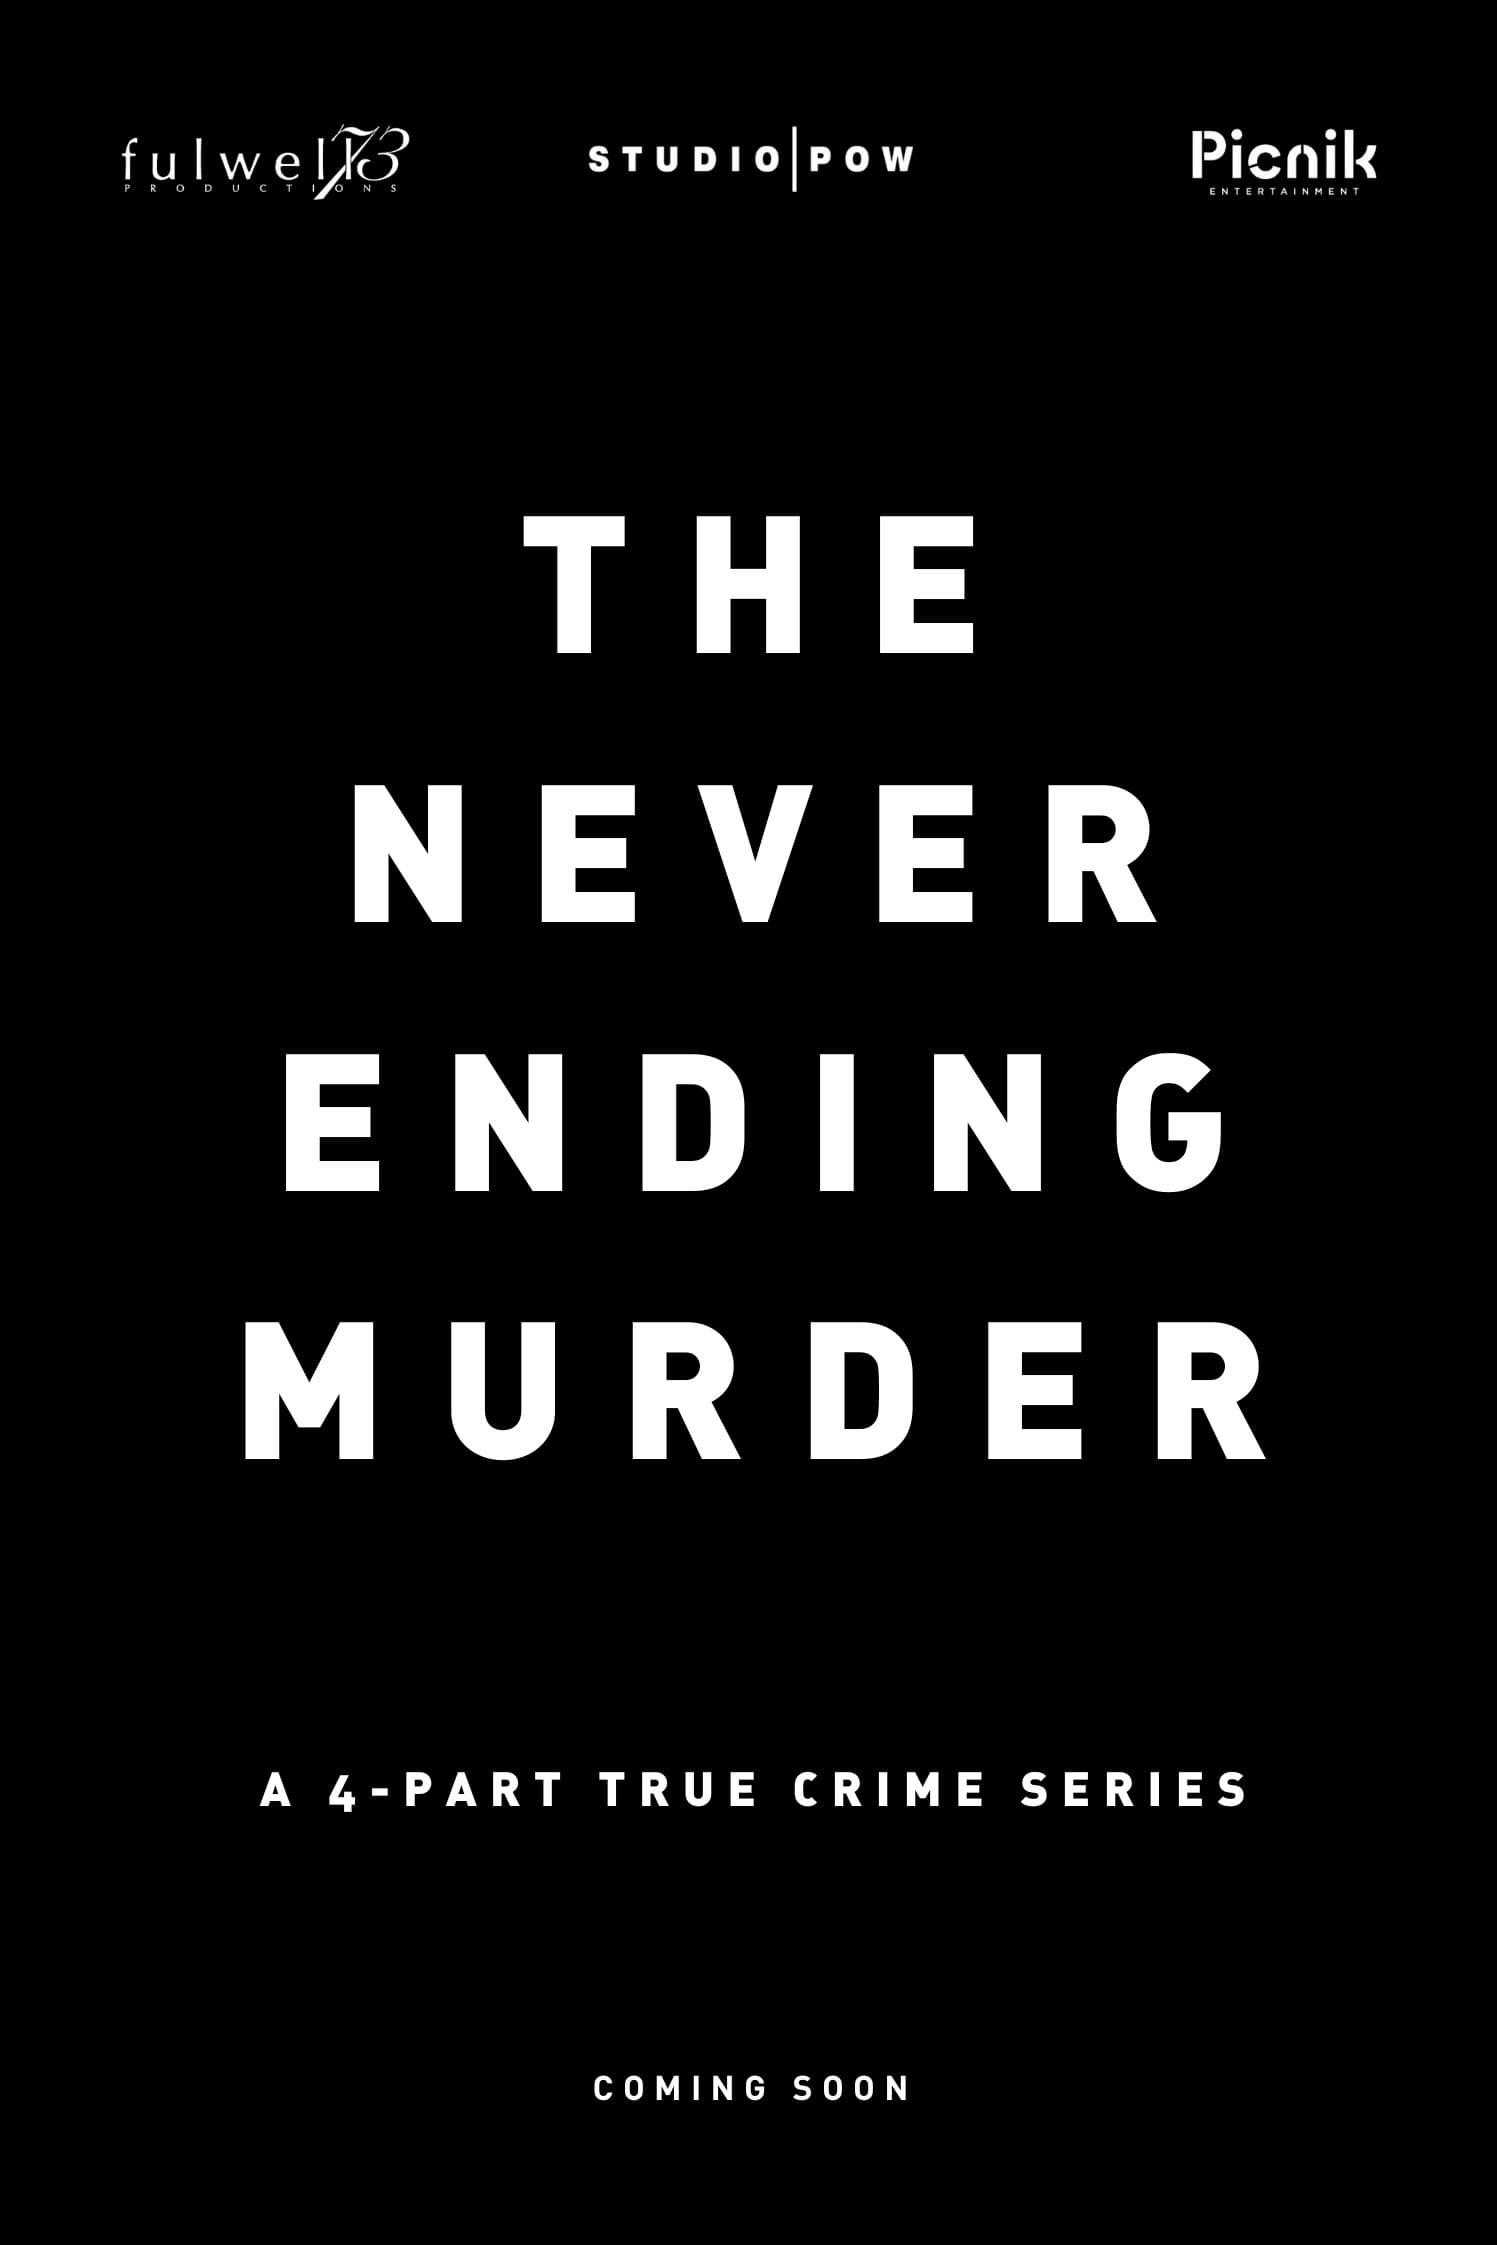 The Never Ending Murder poster